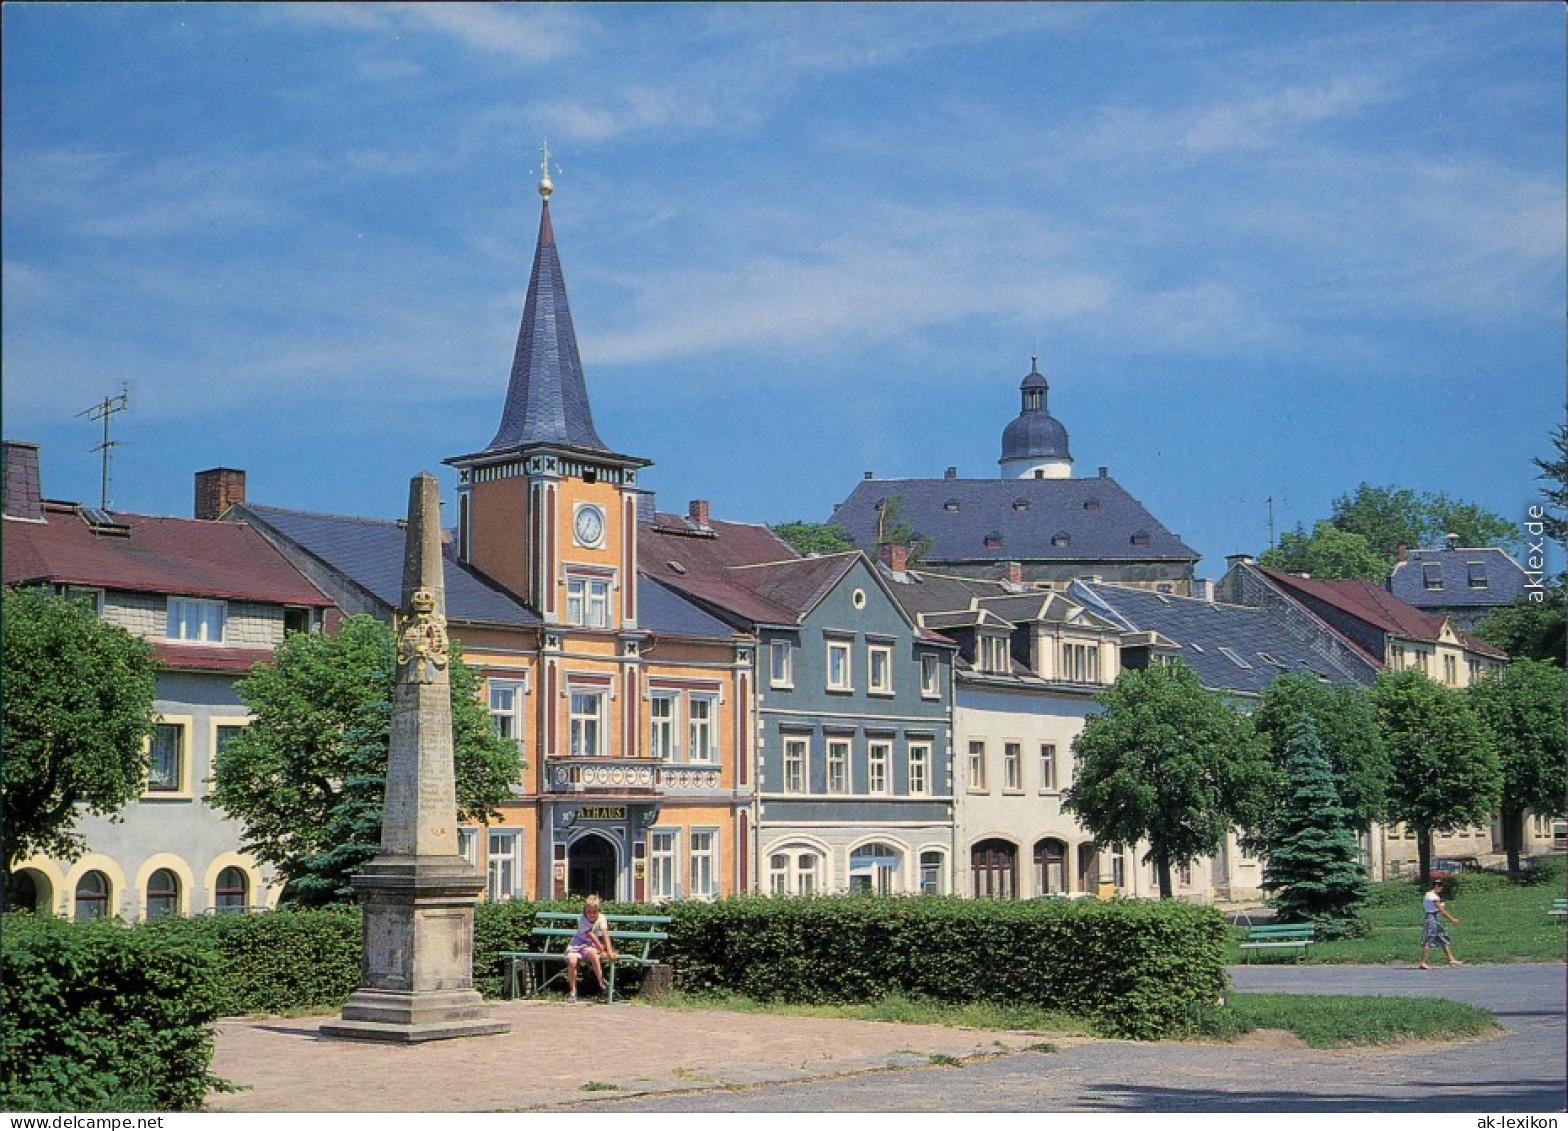 Ansichtskarte Frauenstein (Erzgebirge) Rathaus, Platz Mit Postsäule 1995 - Frauenstein (Erzgeb.)